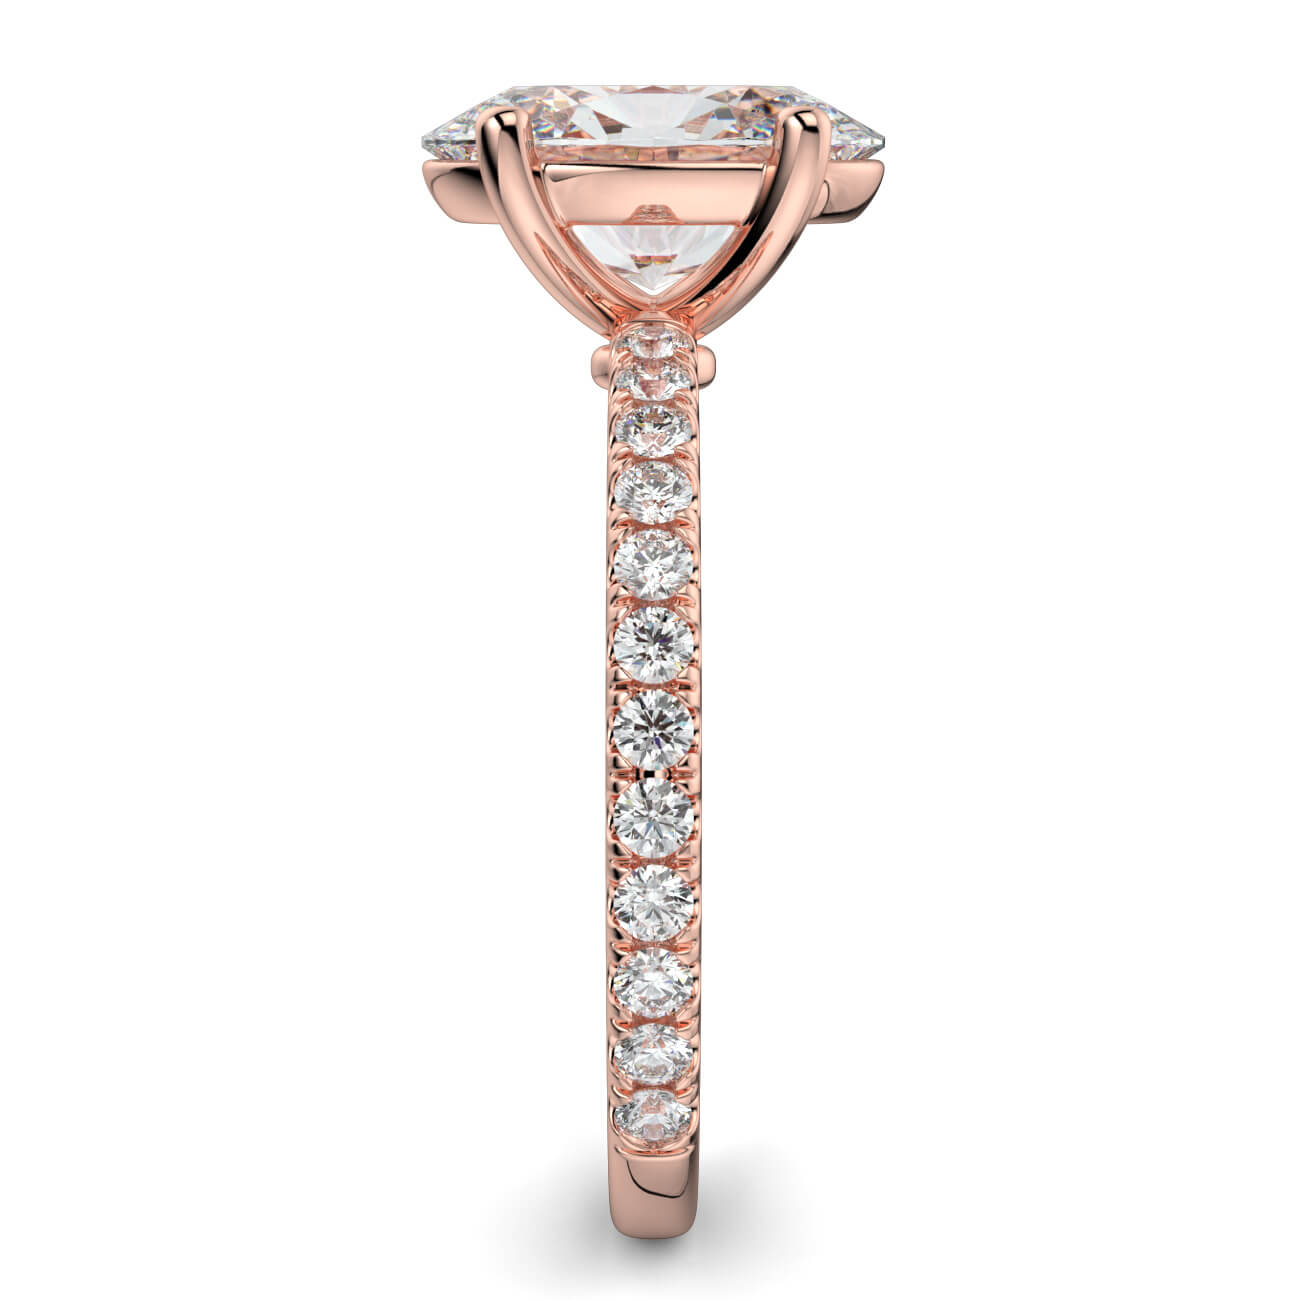 Delicate ‘Liat’ Oval Shape Diamond Engagement Ring in 18k Rose Gold – Australian Diamond Network